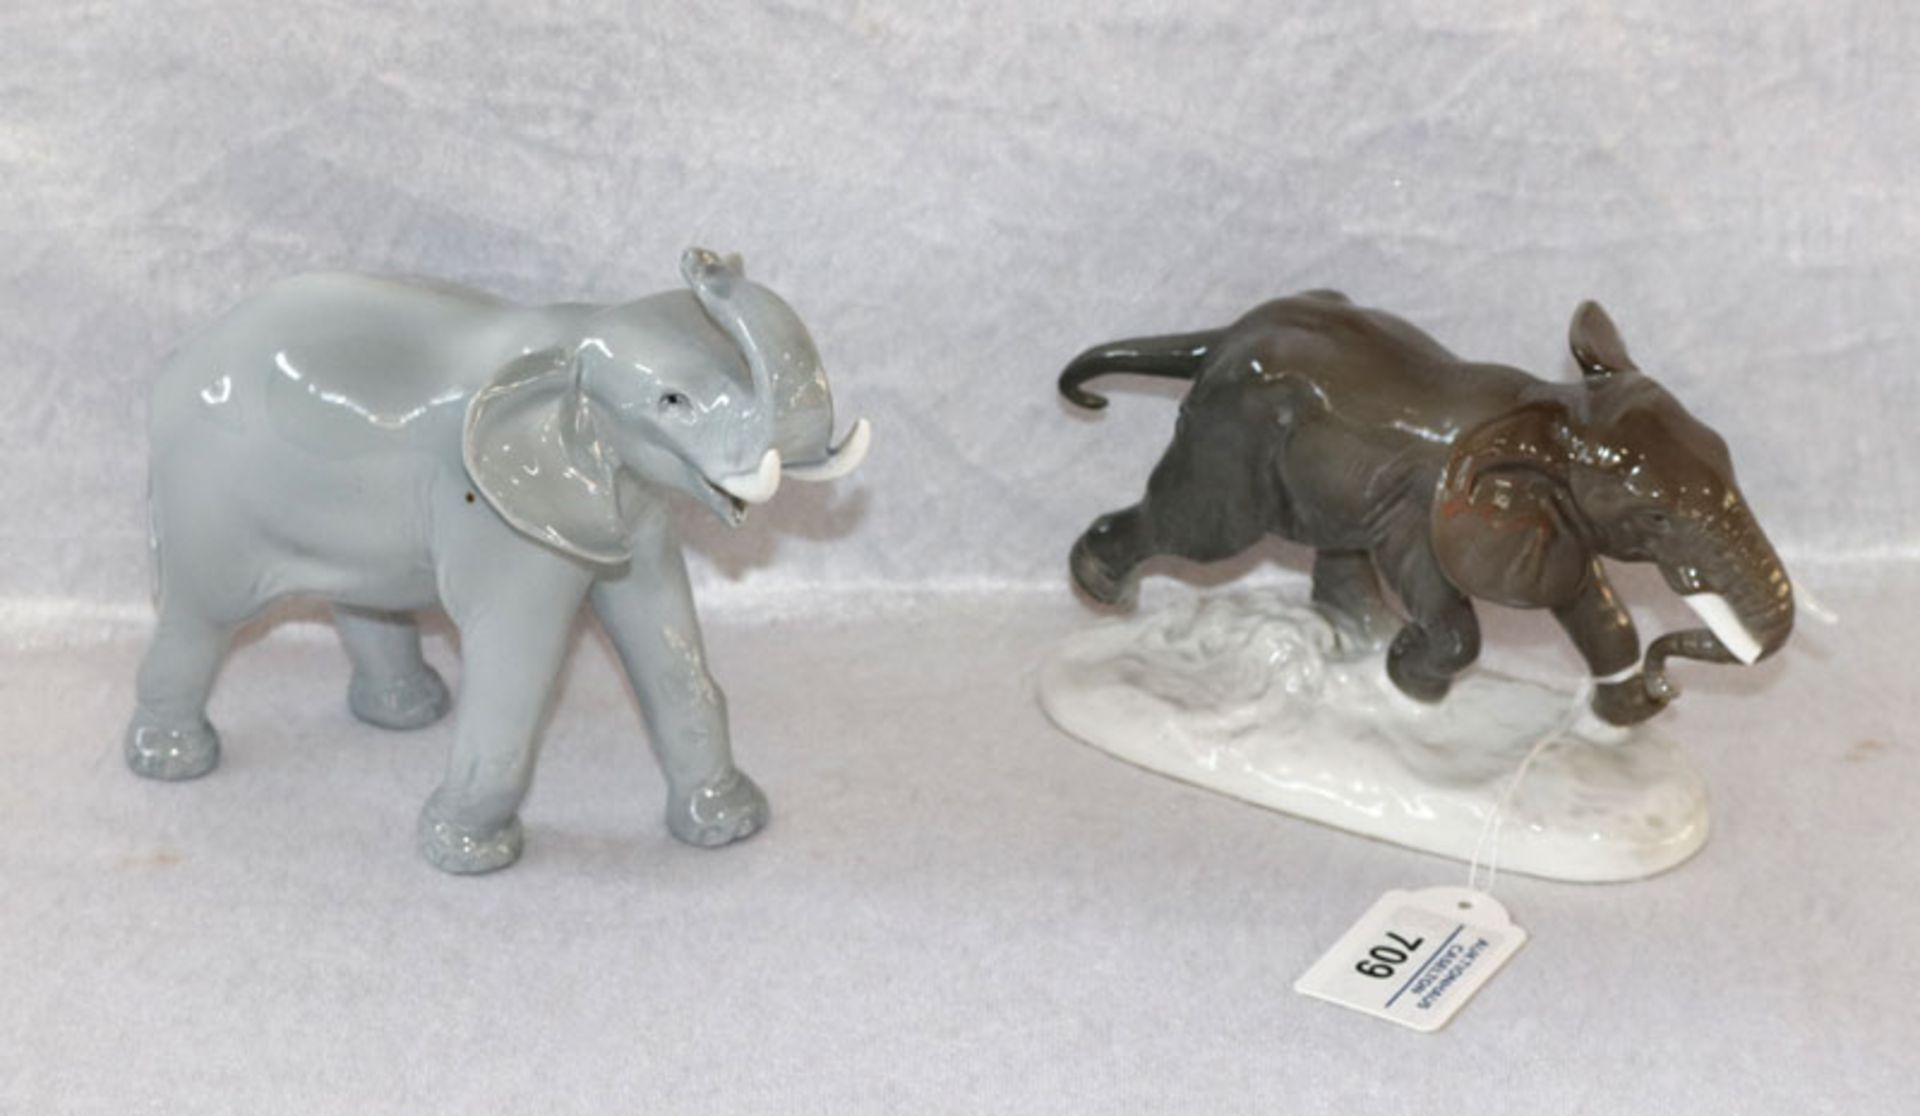 Ens Porzellan Tierskulptur 'Elefant', ein Zahn beschädigt, H 11 cm, B 8 cm, L 18 cm und Porzellan